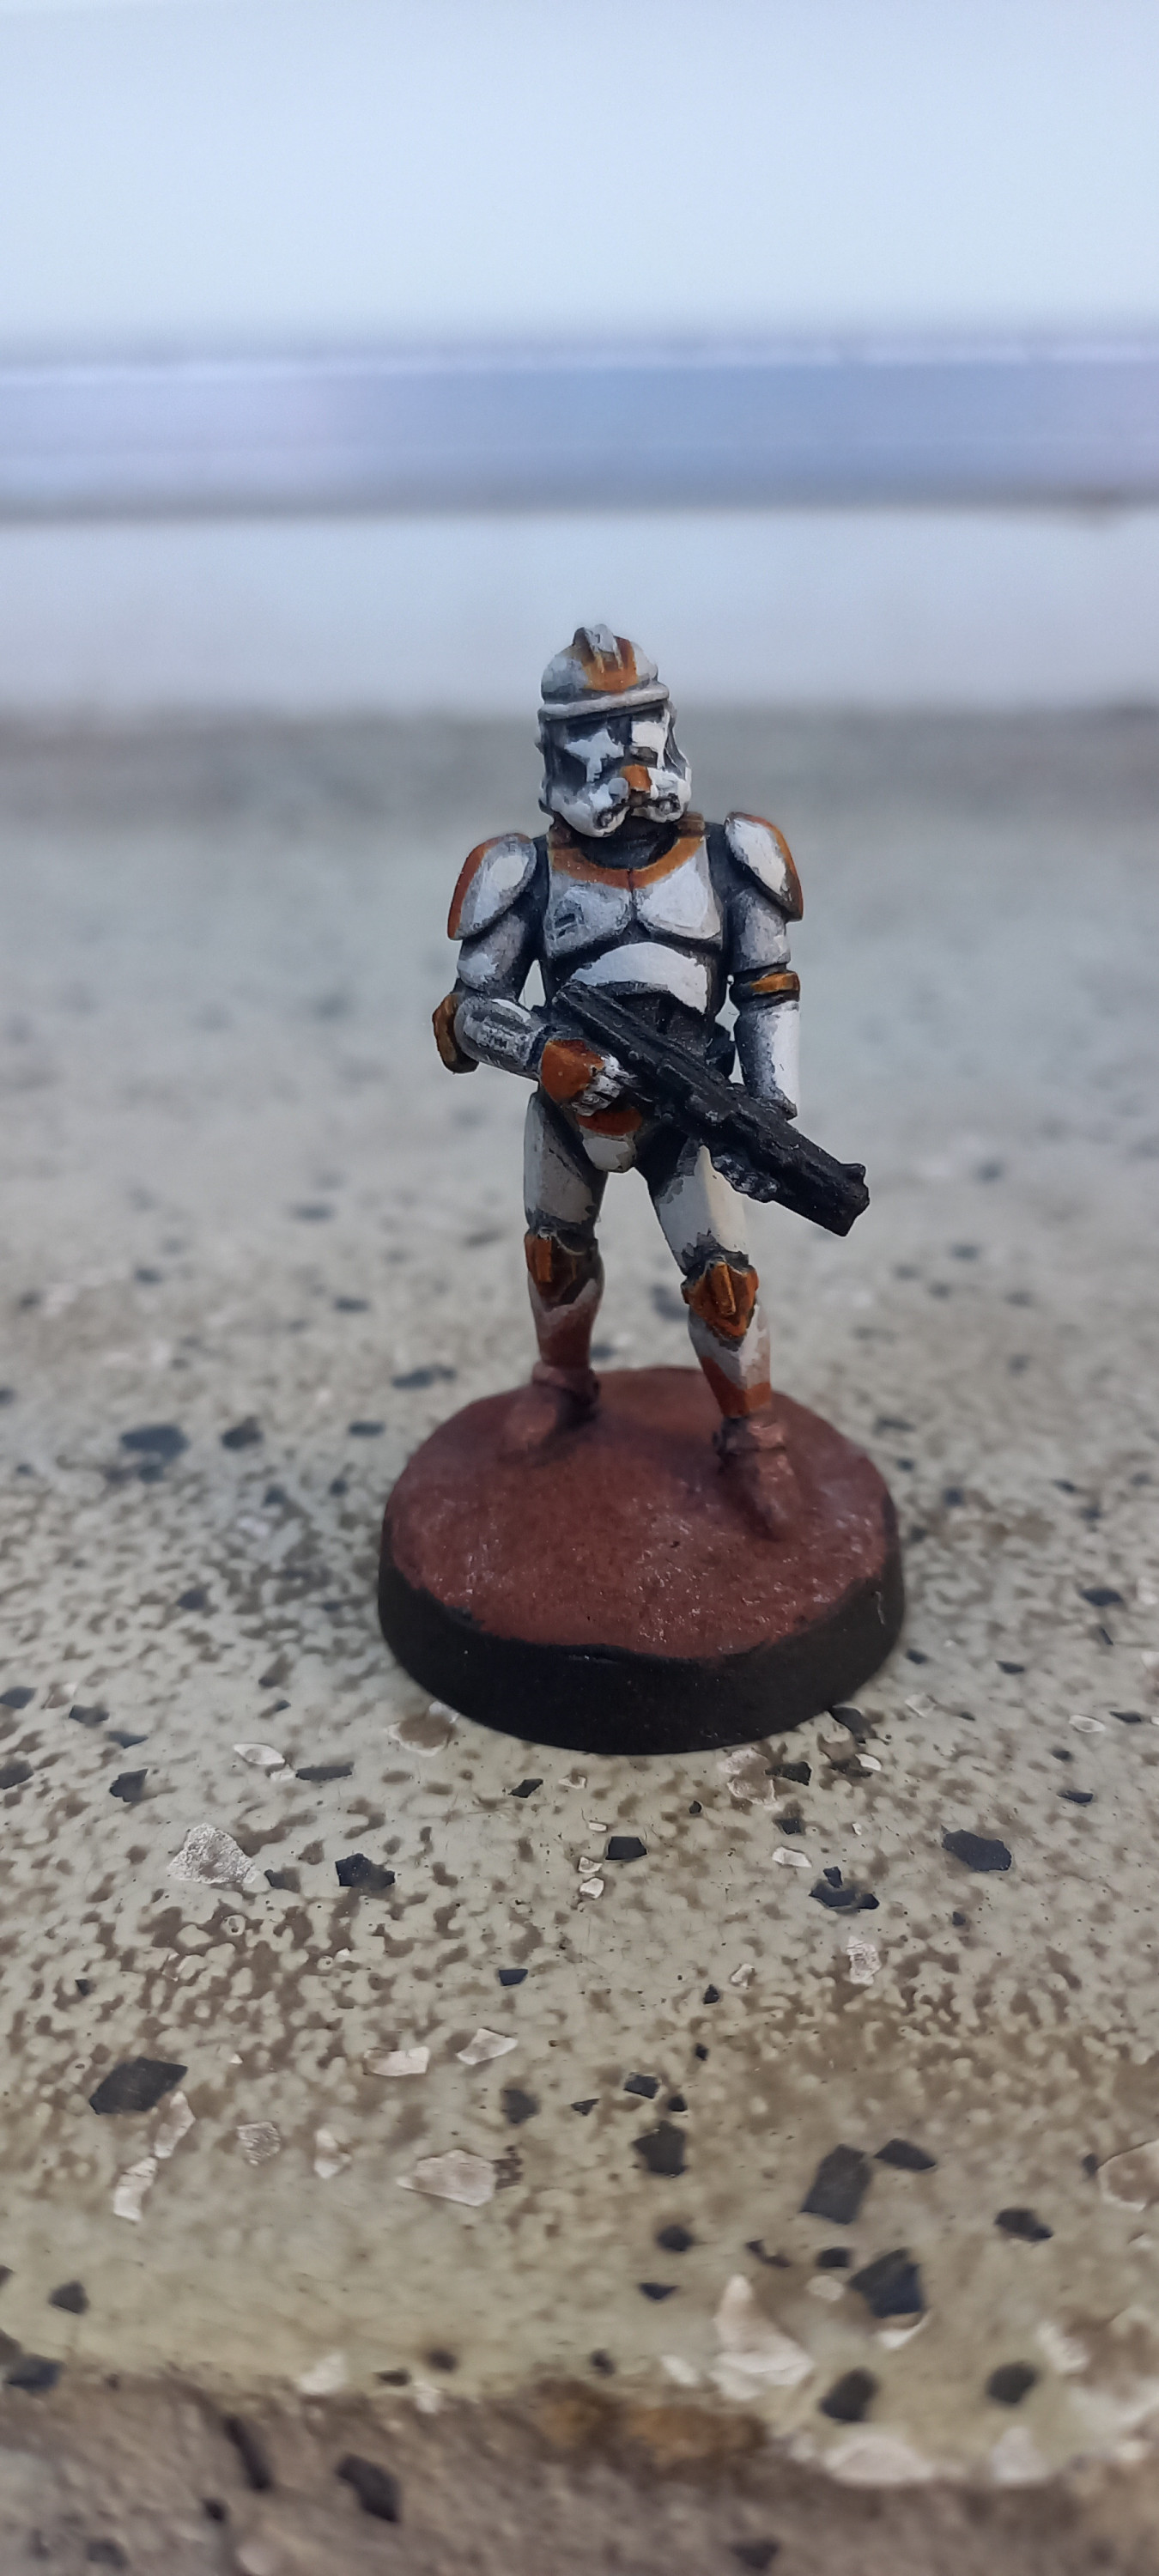 Clone-Trooper Waxer